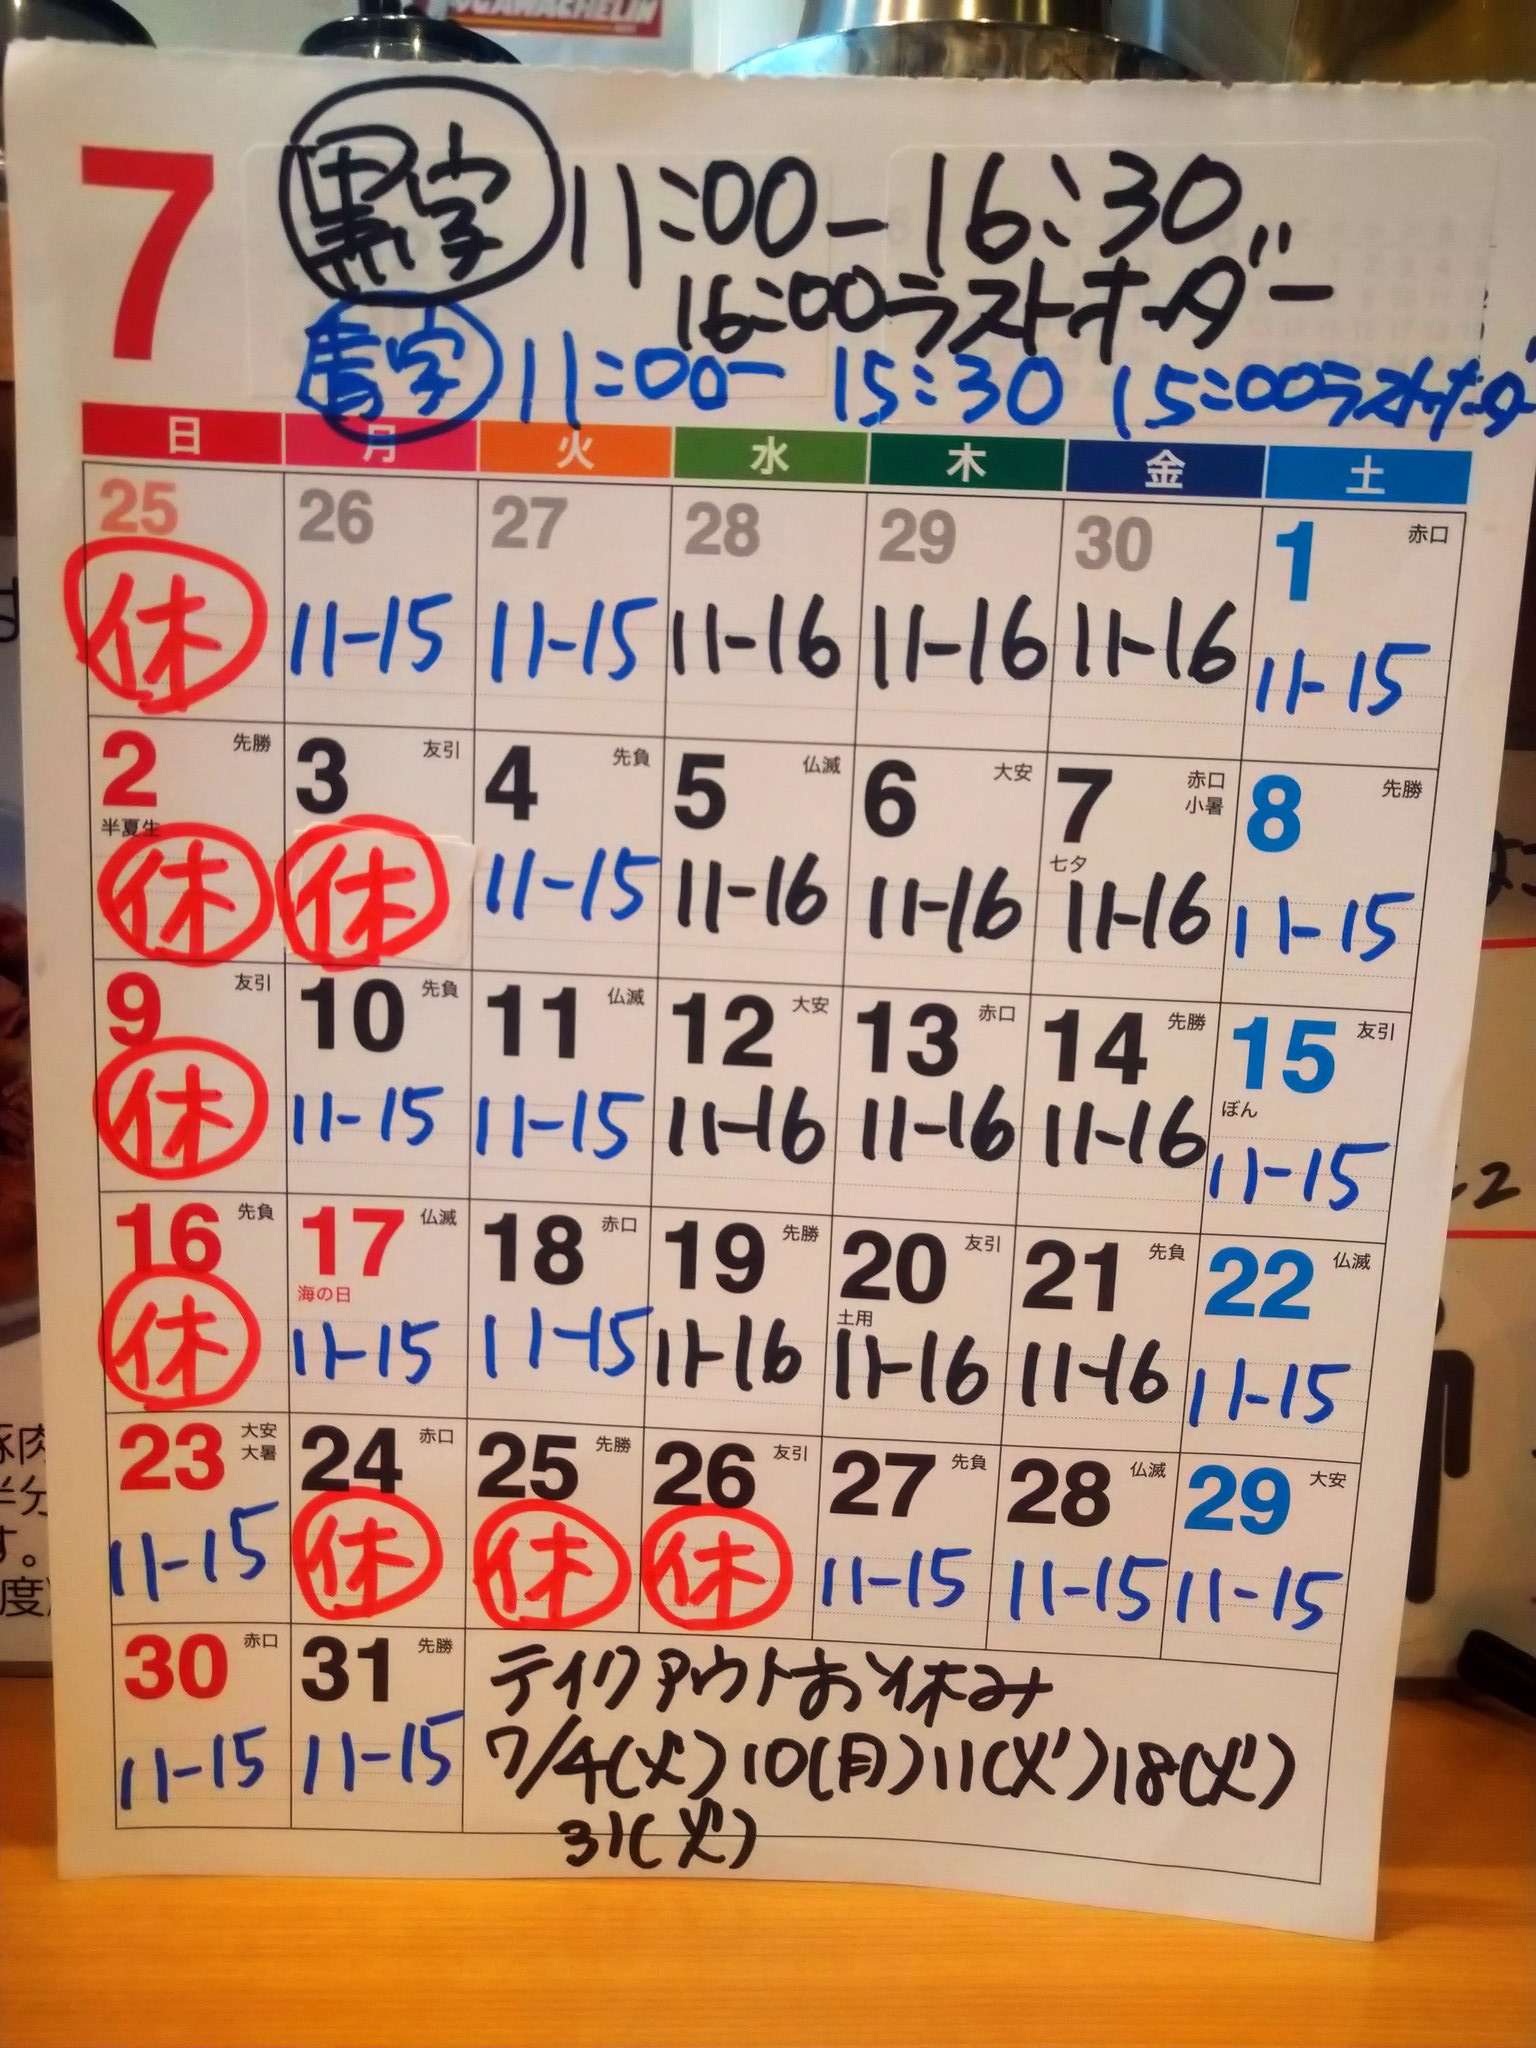 【オーダーご相談ページ・参考価格表】11/12〜11/16オーダー休み